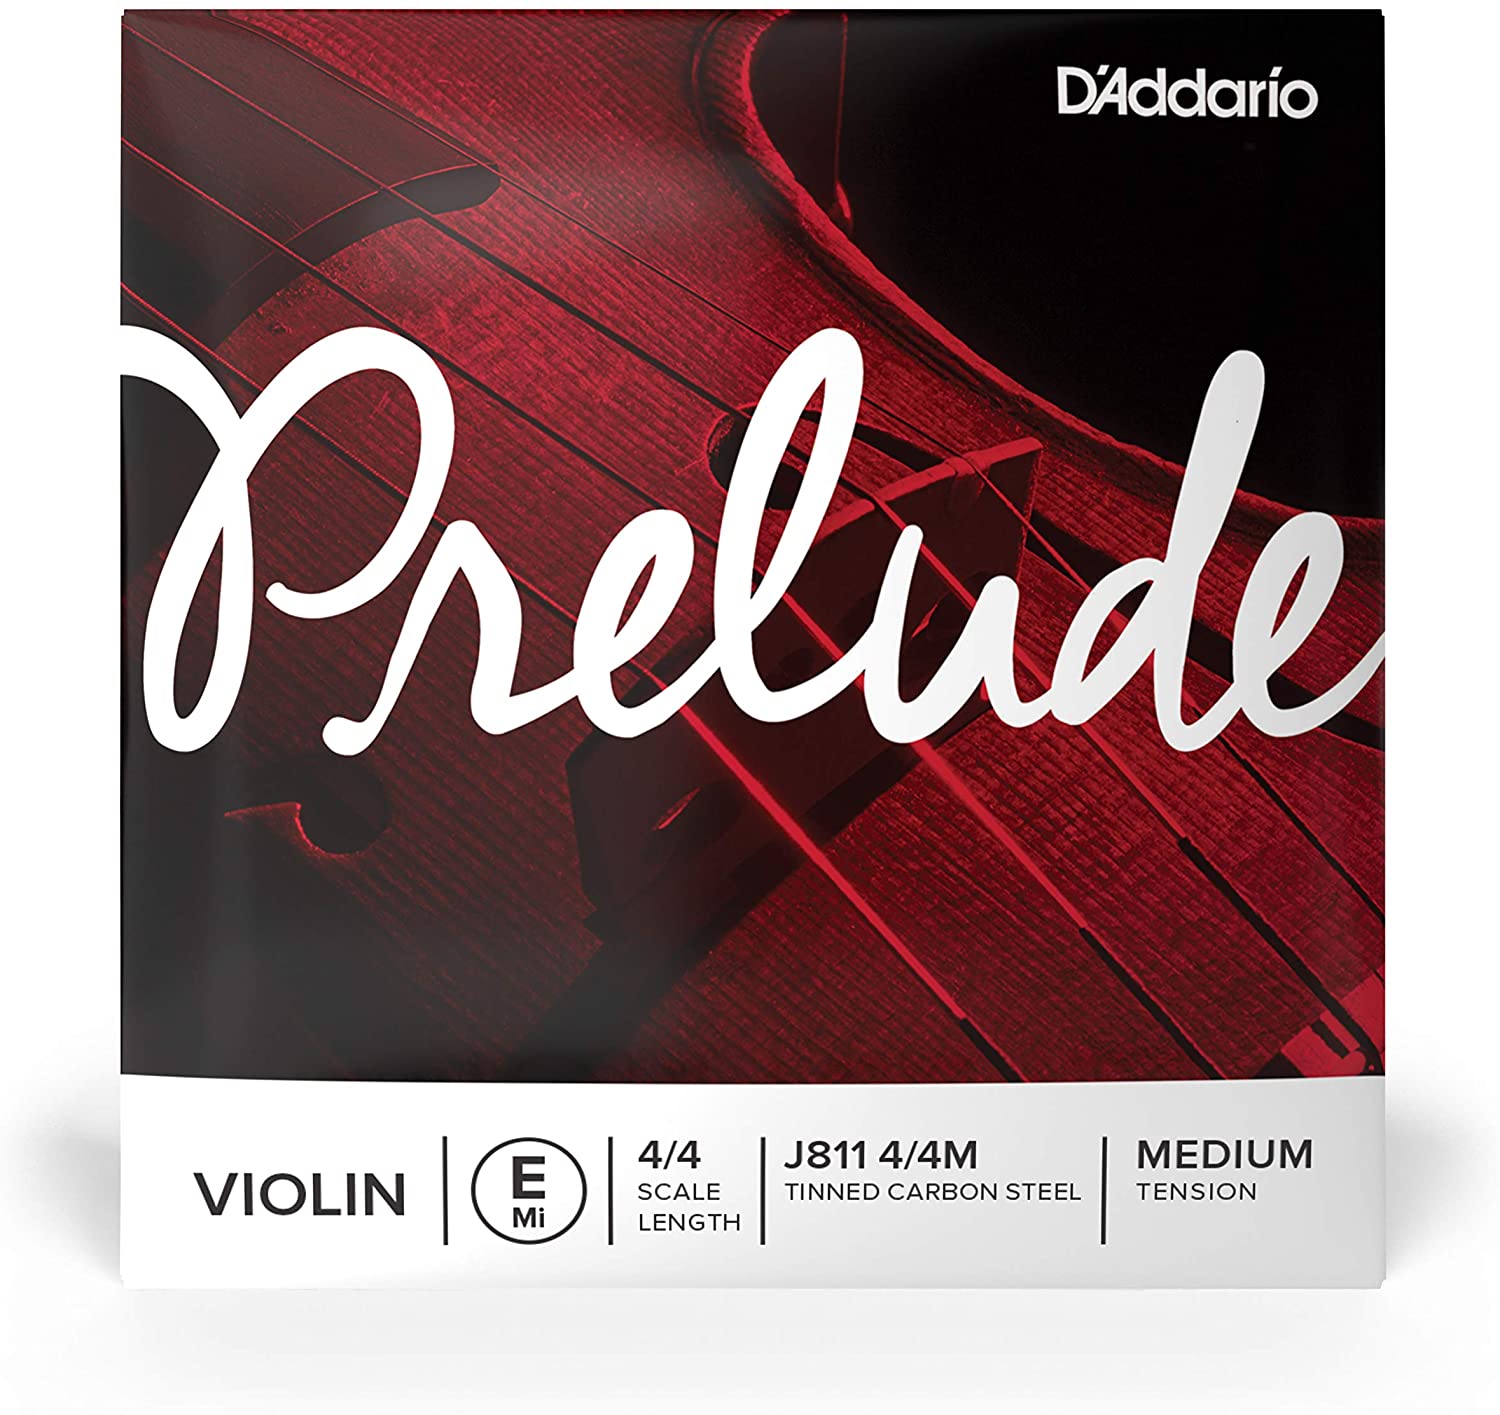 D’ Addario Prelude Violin Strings - J811 4/4M - E, 4/4 Scale, Medium Tension - Single String